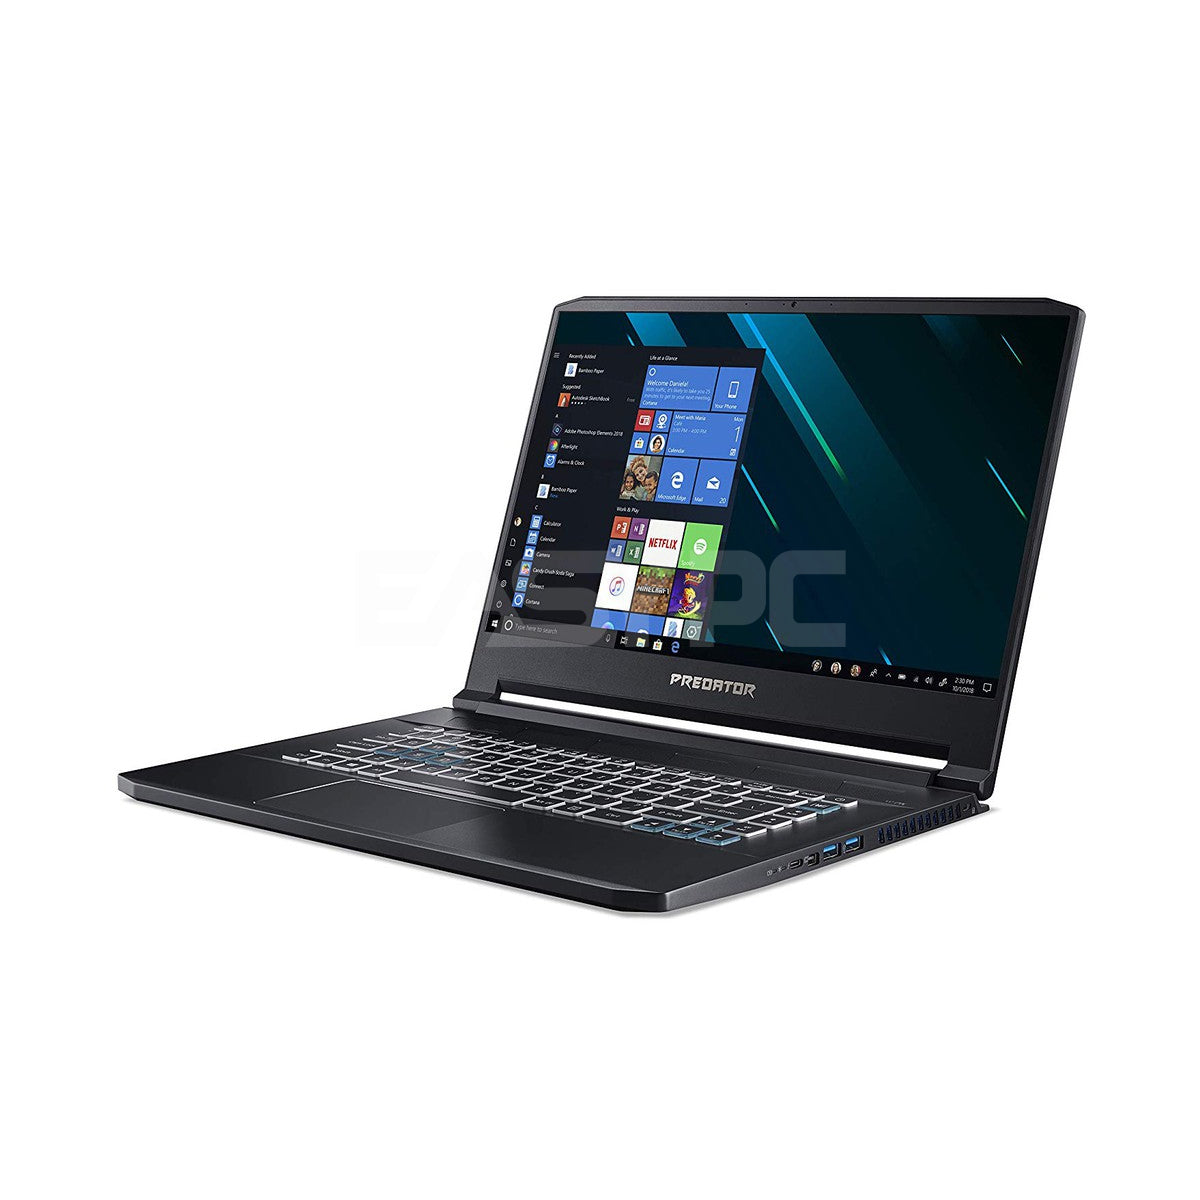 Acer Predator Helios 300 review (PH315-51 model - Core i7-8750H, GTX 1060,  144 Hz screen)